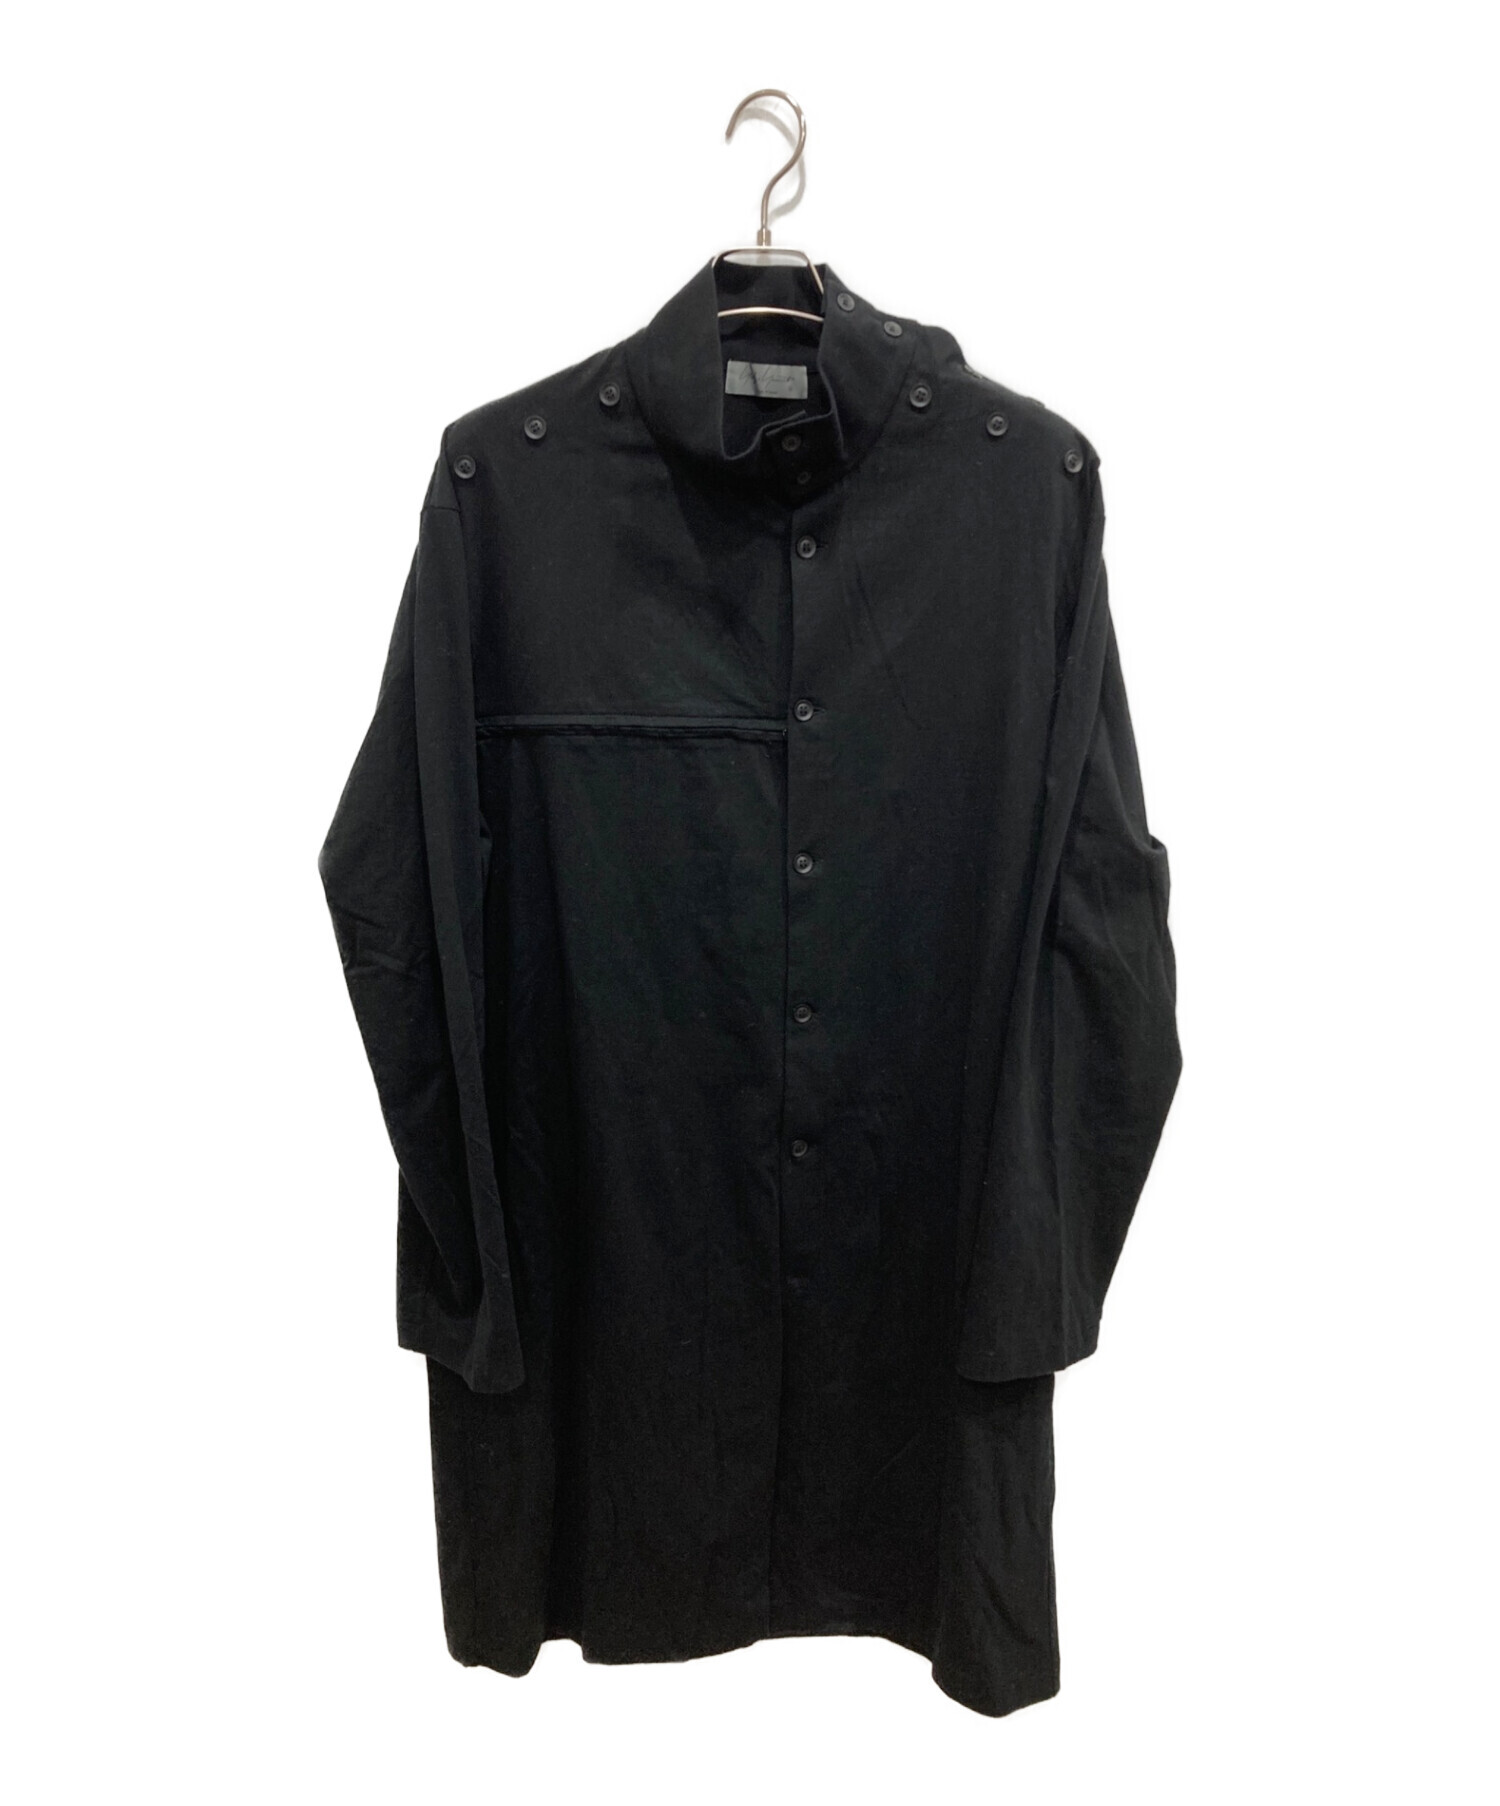 Yohji Yamamoto ロングシャツ サイズ3 黒 ブラック袖丈長袖